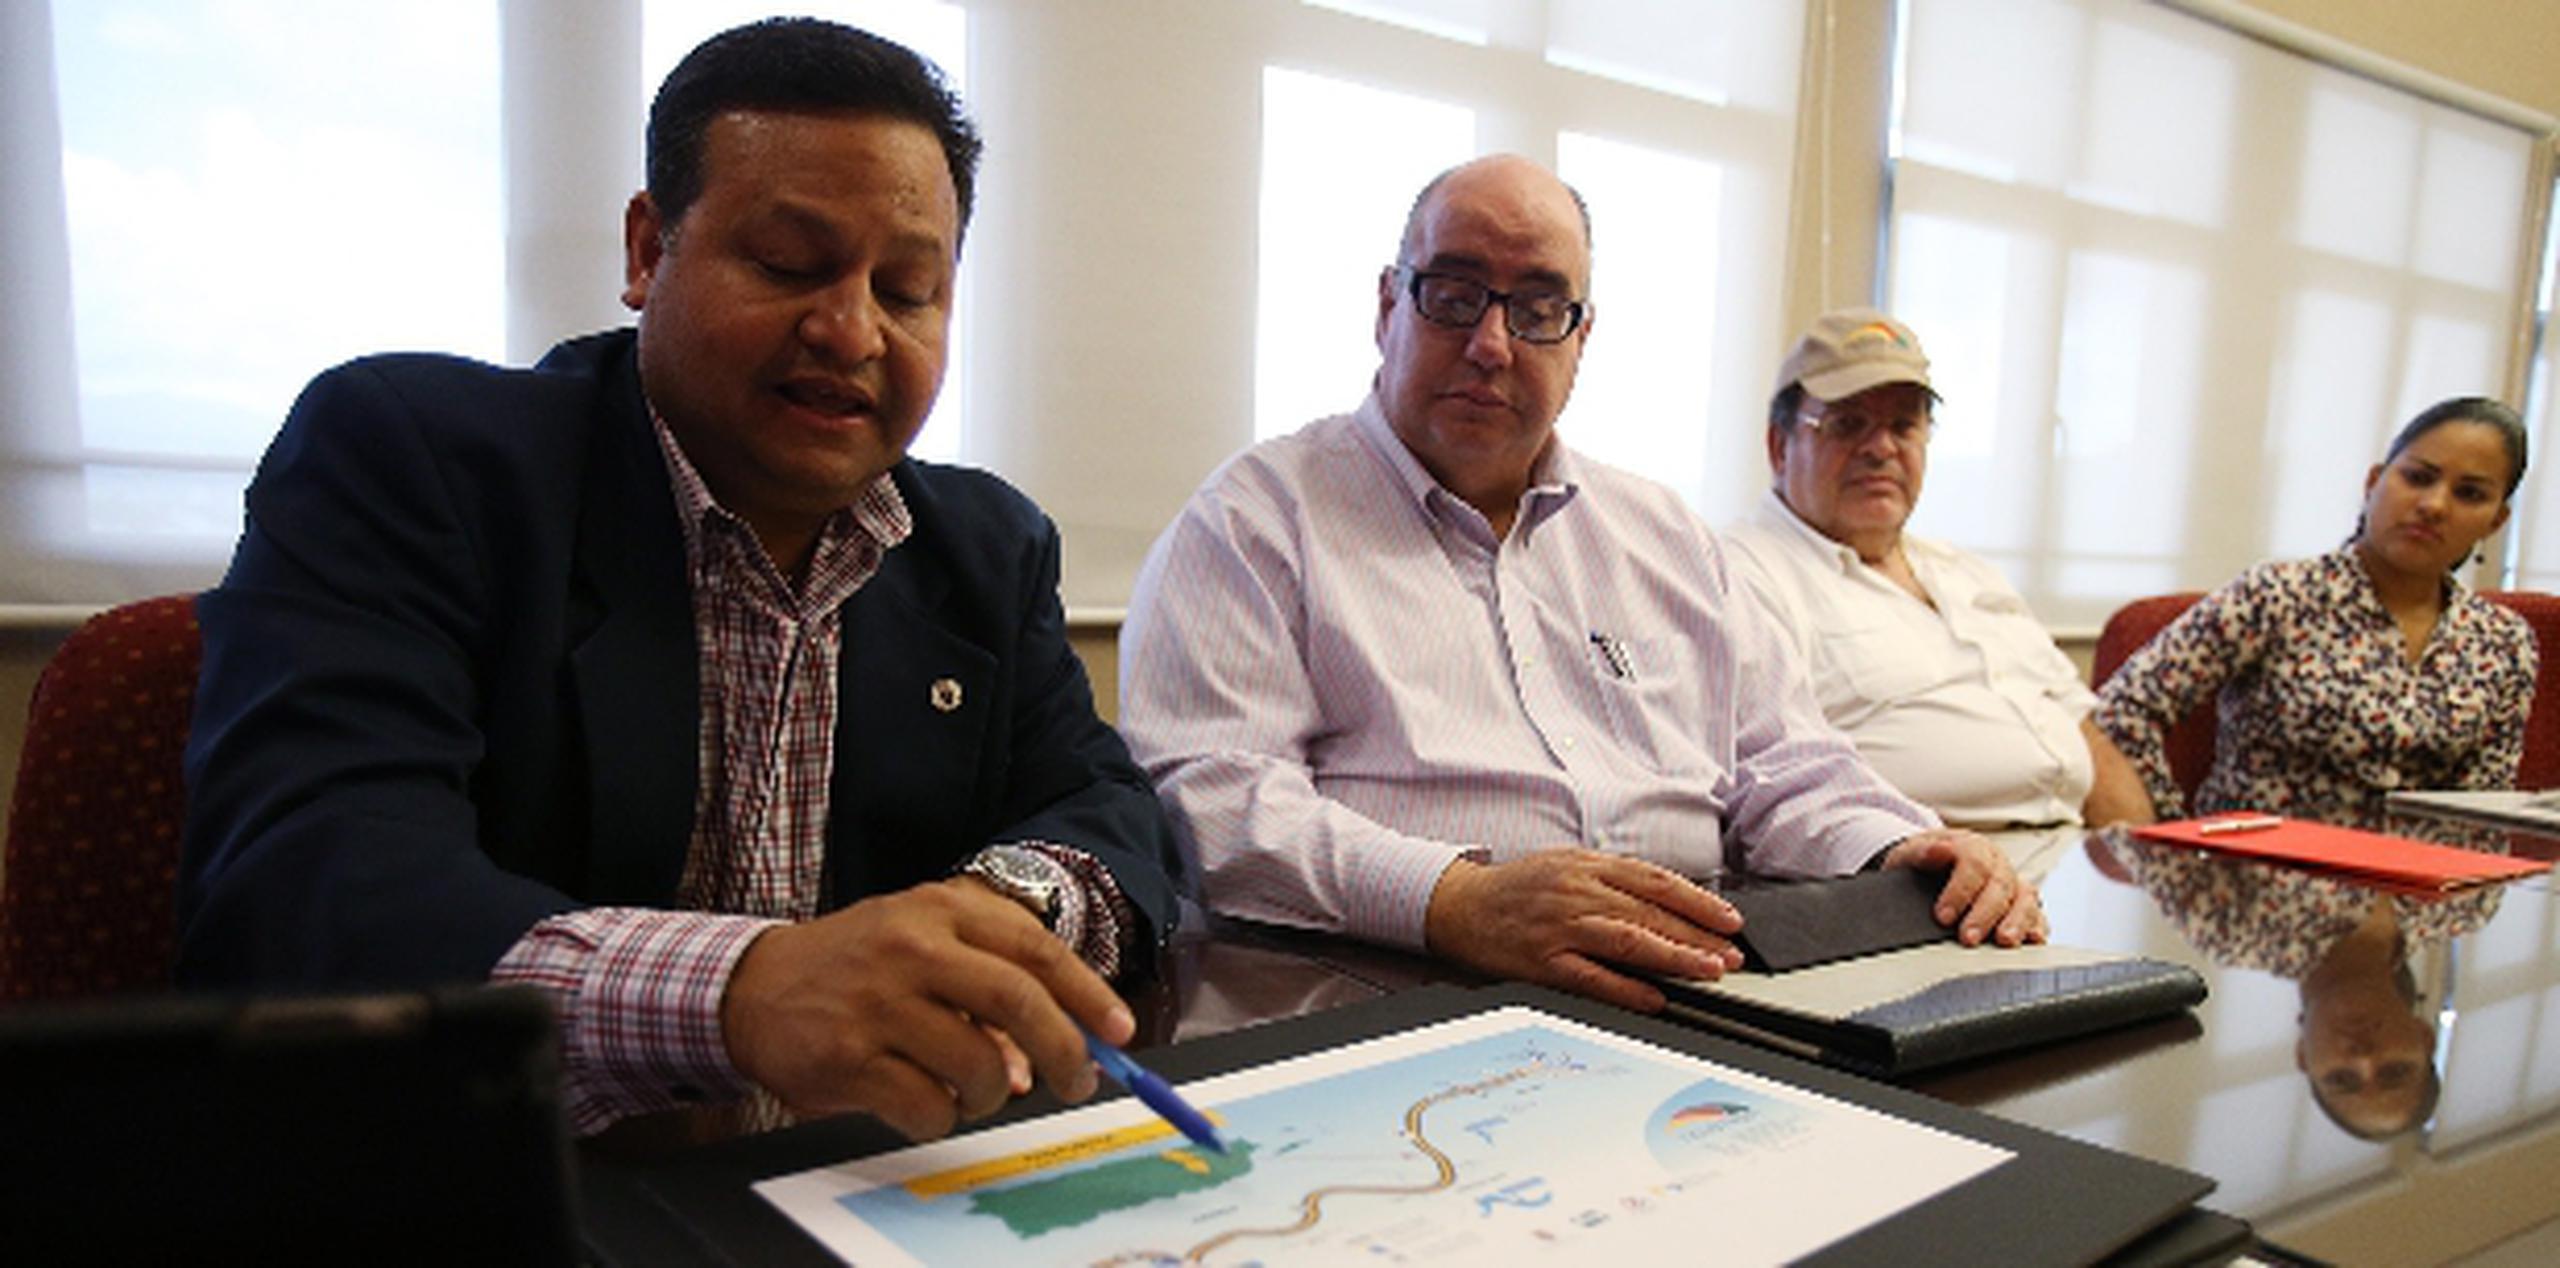 El alcalde de Caguas, William Miranda Torres, señala la ruta que recorrerá el Novotren. Lo acompañan José Izquierdo y Nelson Mattei. (jose.candelaria@gfrmedia.com)